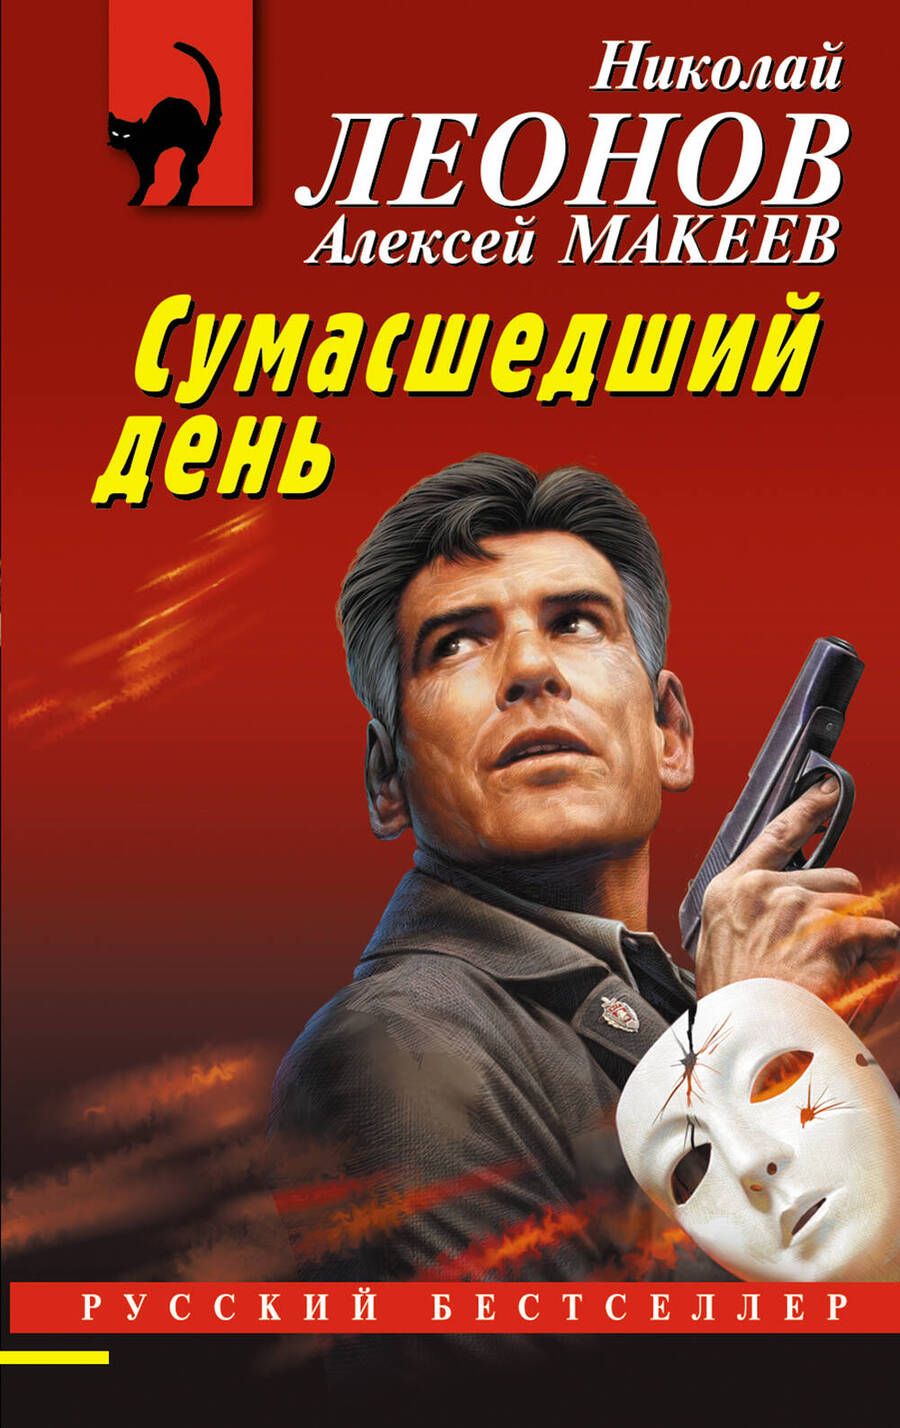 Обложка книги "Леонов: Сумасшедший день"